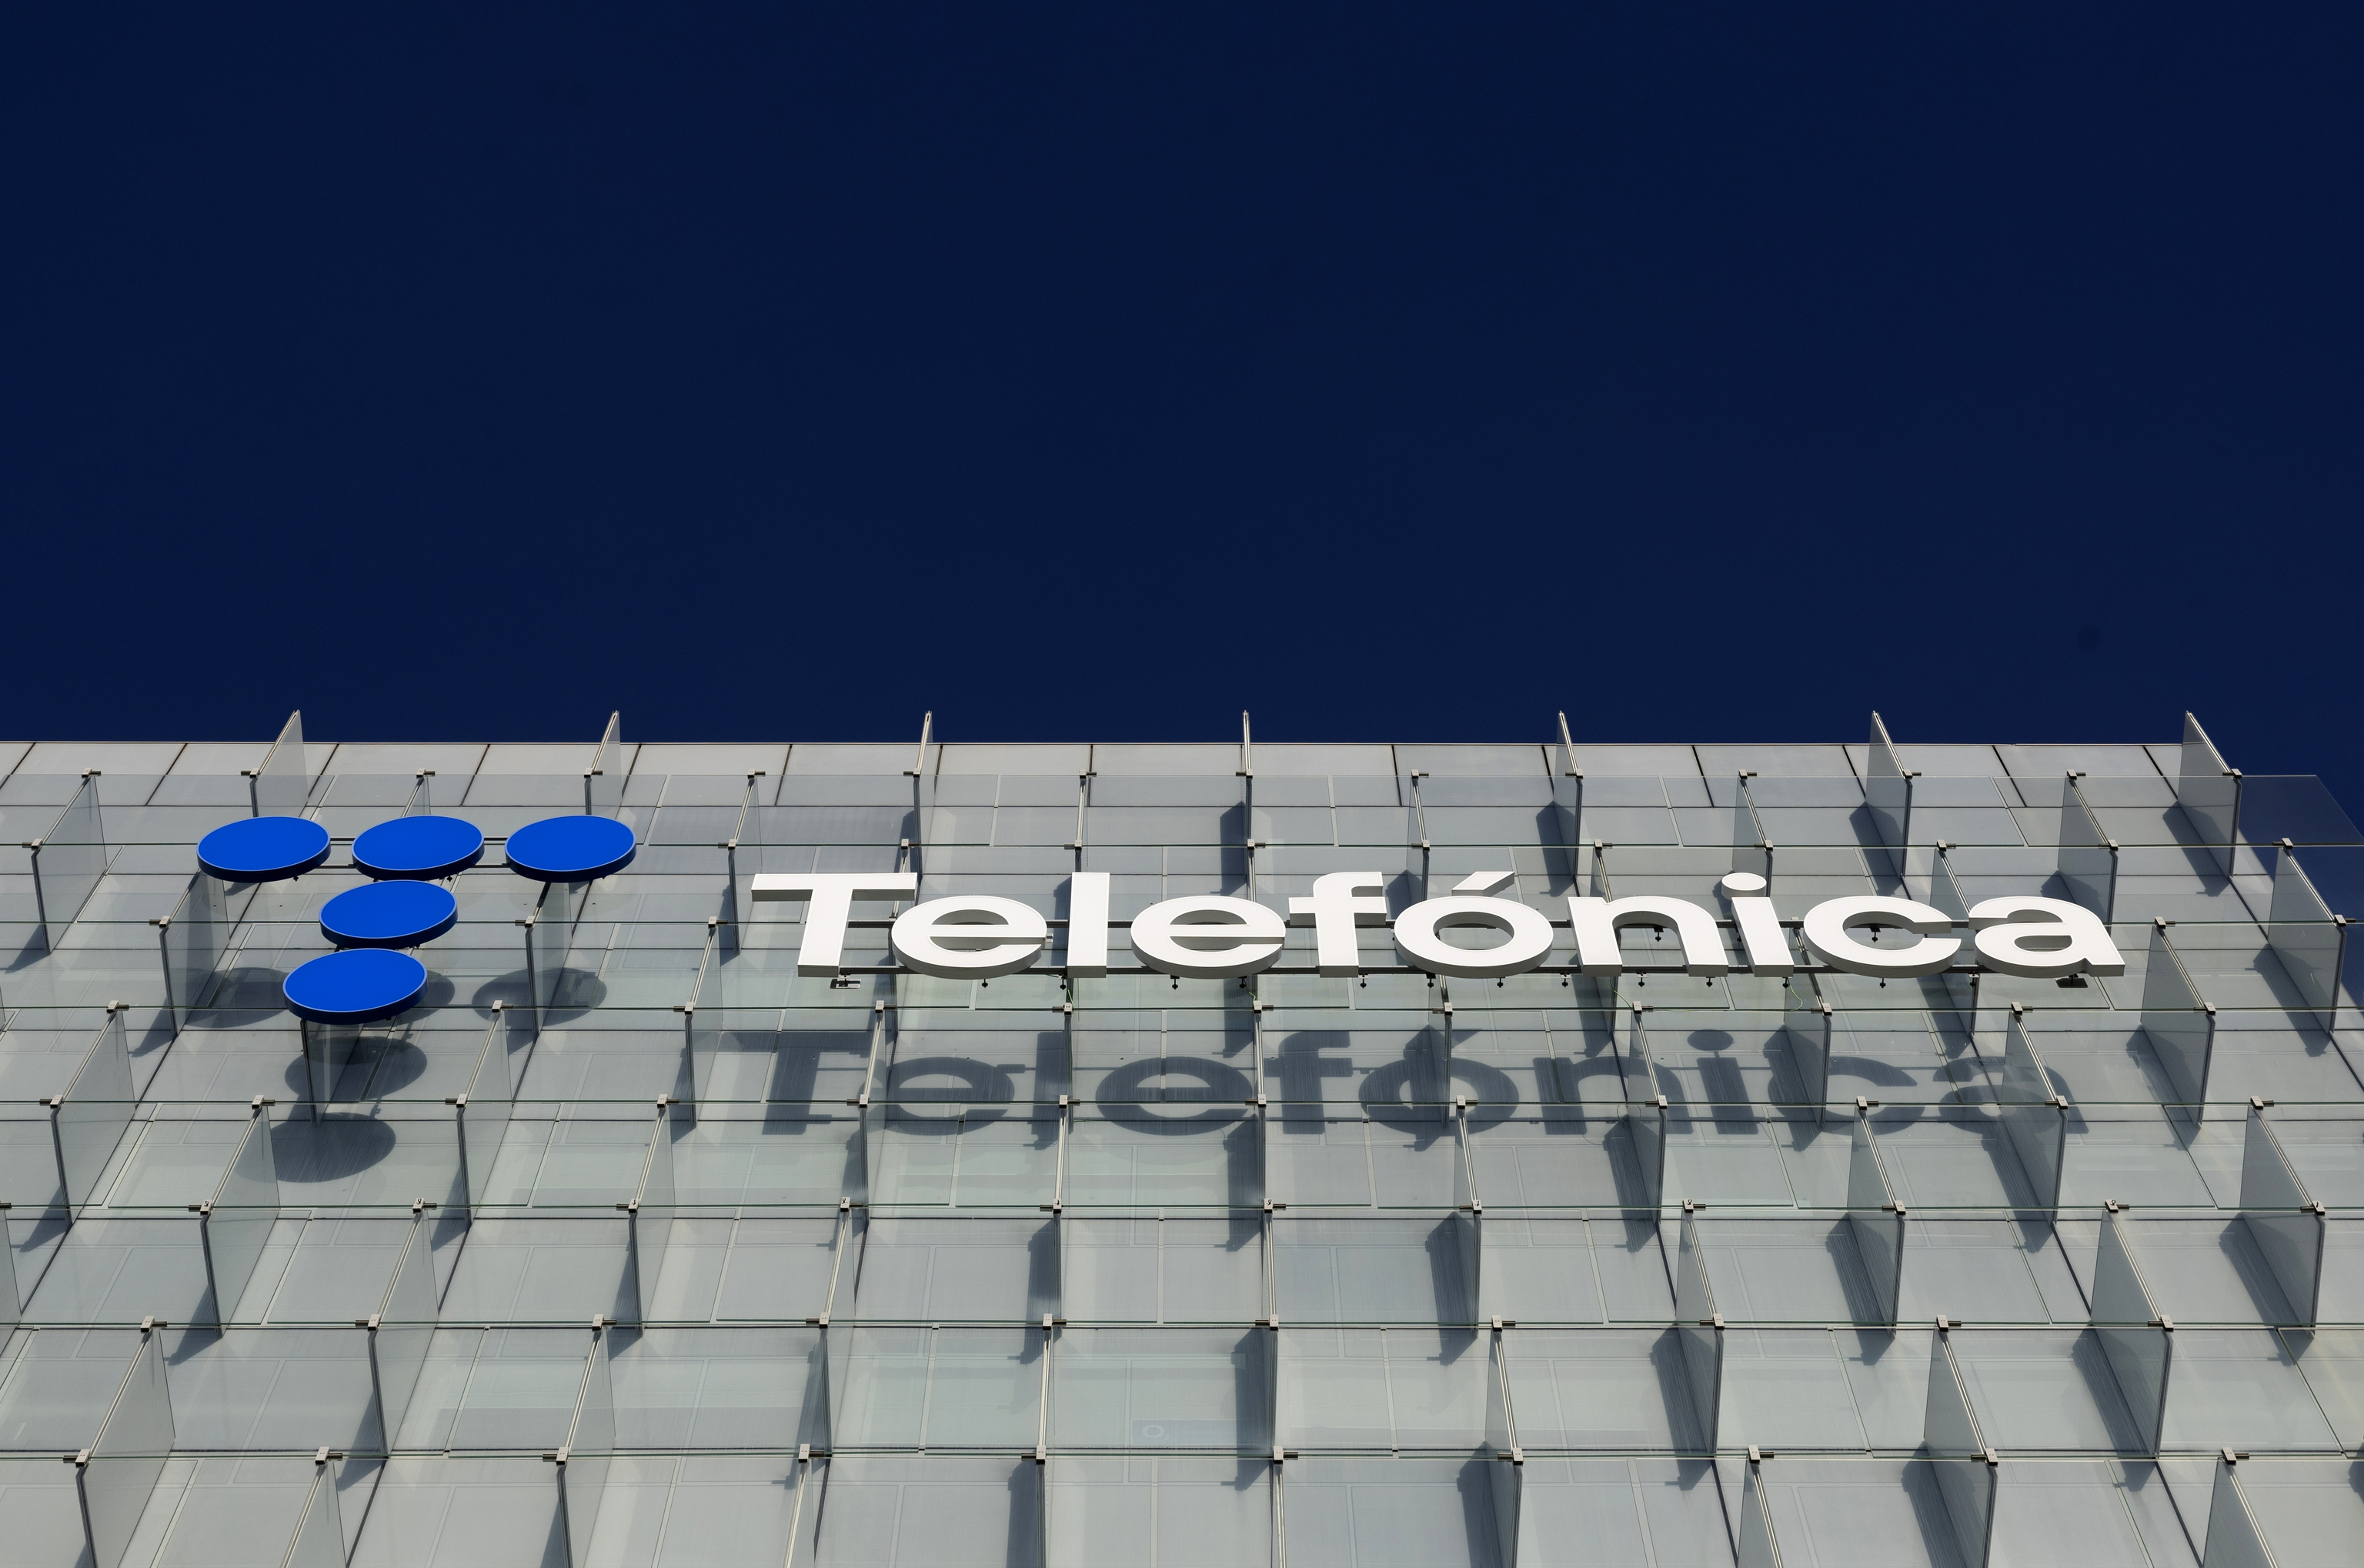 Fachada de la sede de Telefónica en Madrid.